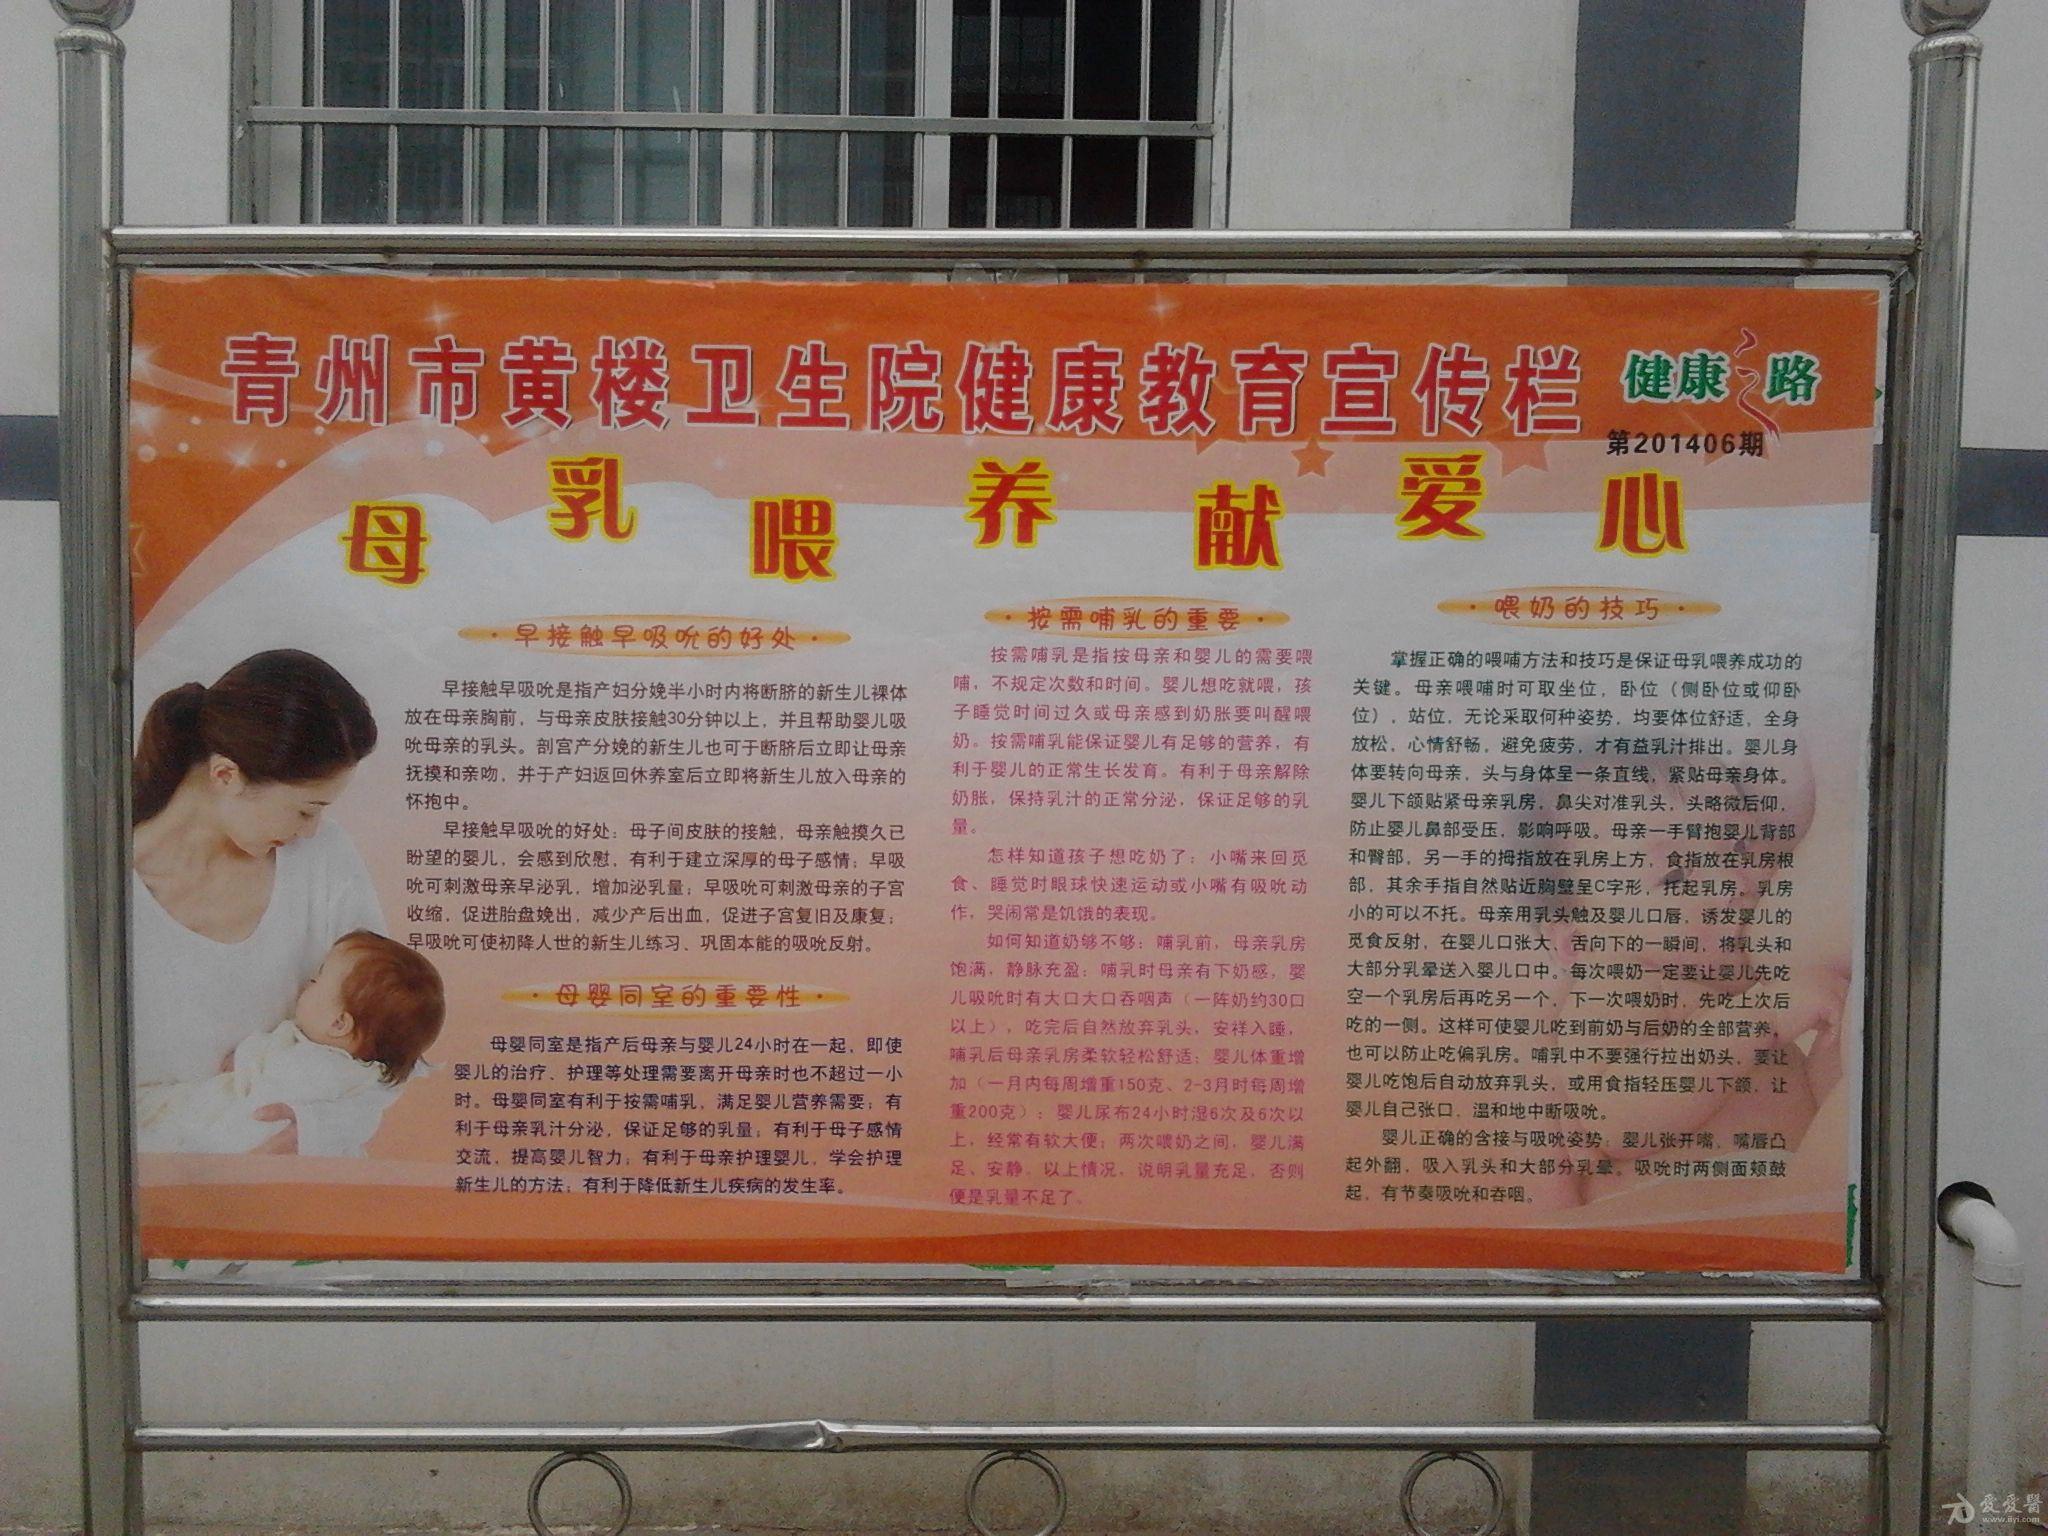 青州市黄楼卫生院2014年健康教育宣传栏(更新至201412期,全)